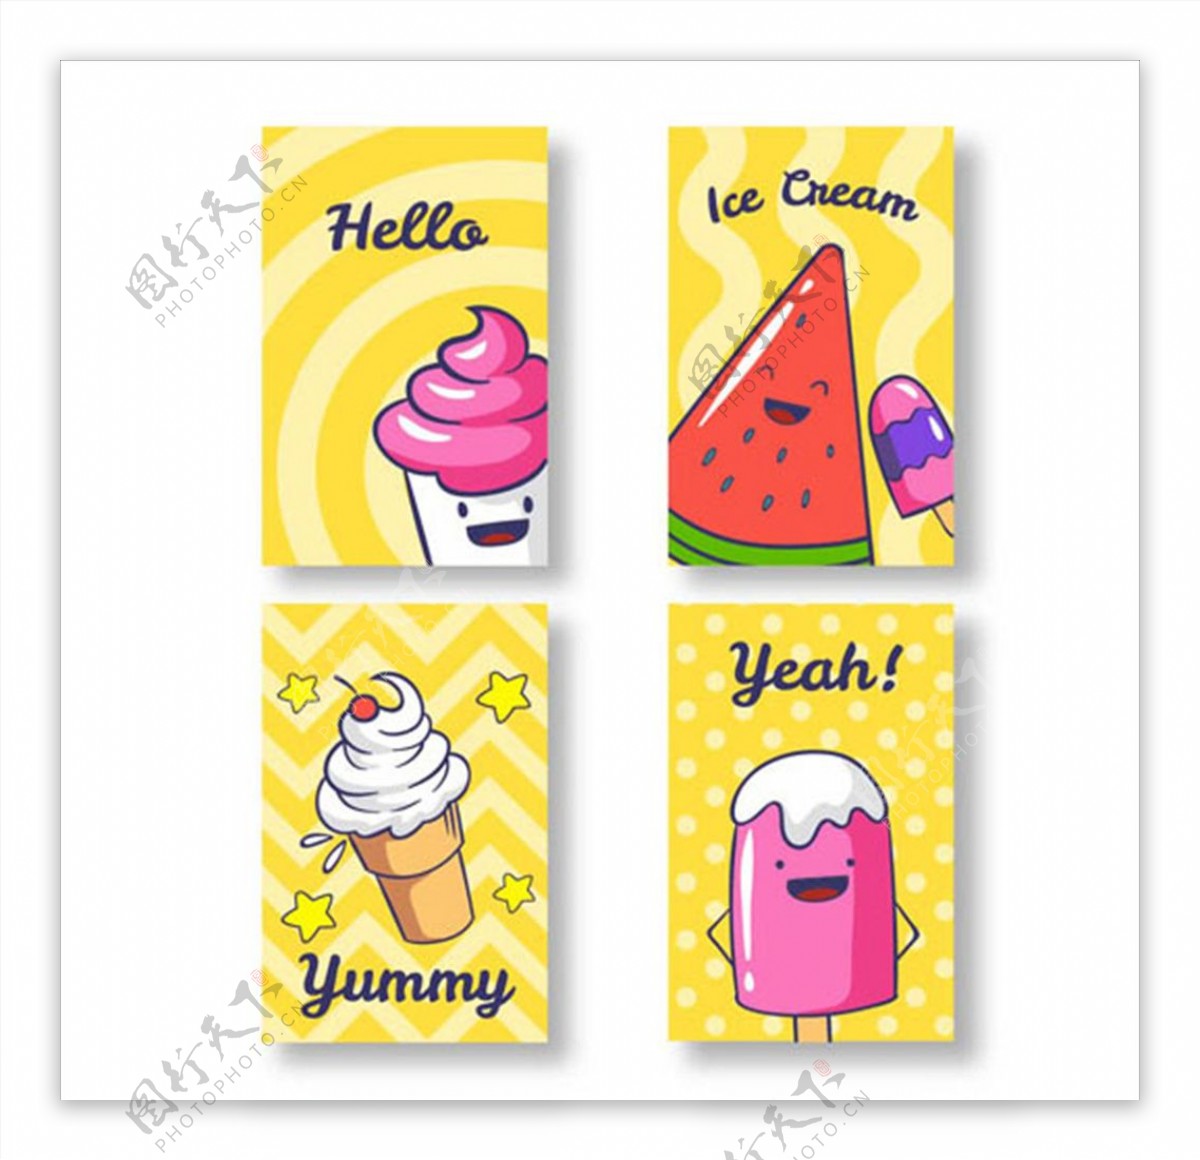 可爱的冰淇淋角色卡片